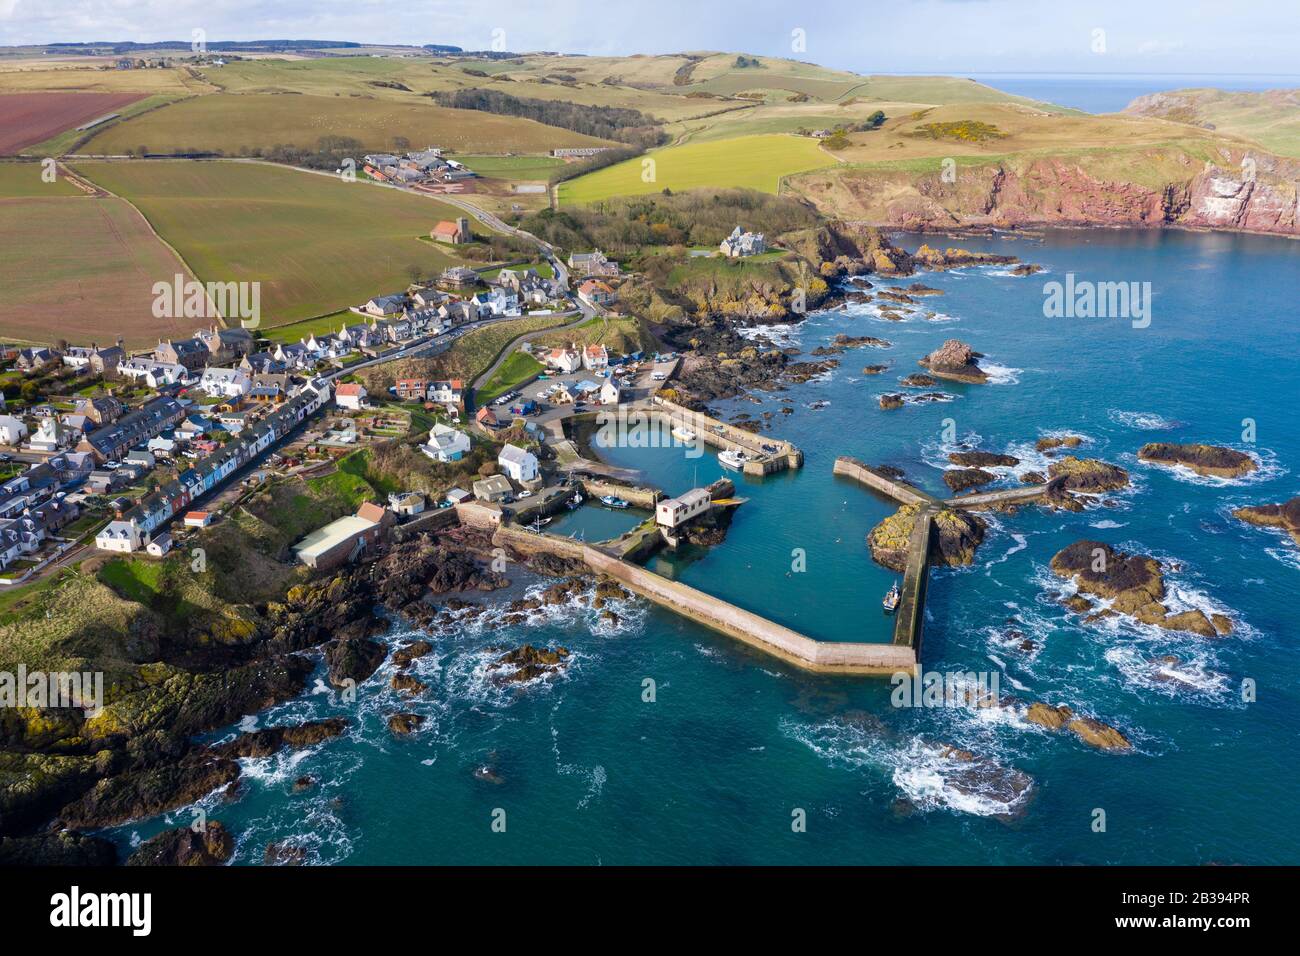 Vue aérienne du petit village de pêcheurs et du port de St Abbs sur la côte de la mer du Nord à Scottish Borders, Écosse, Royaume-Uni Banque D'Images